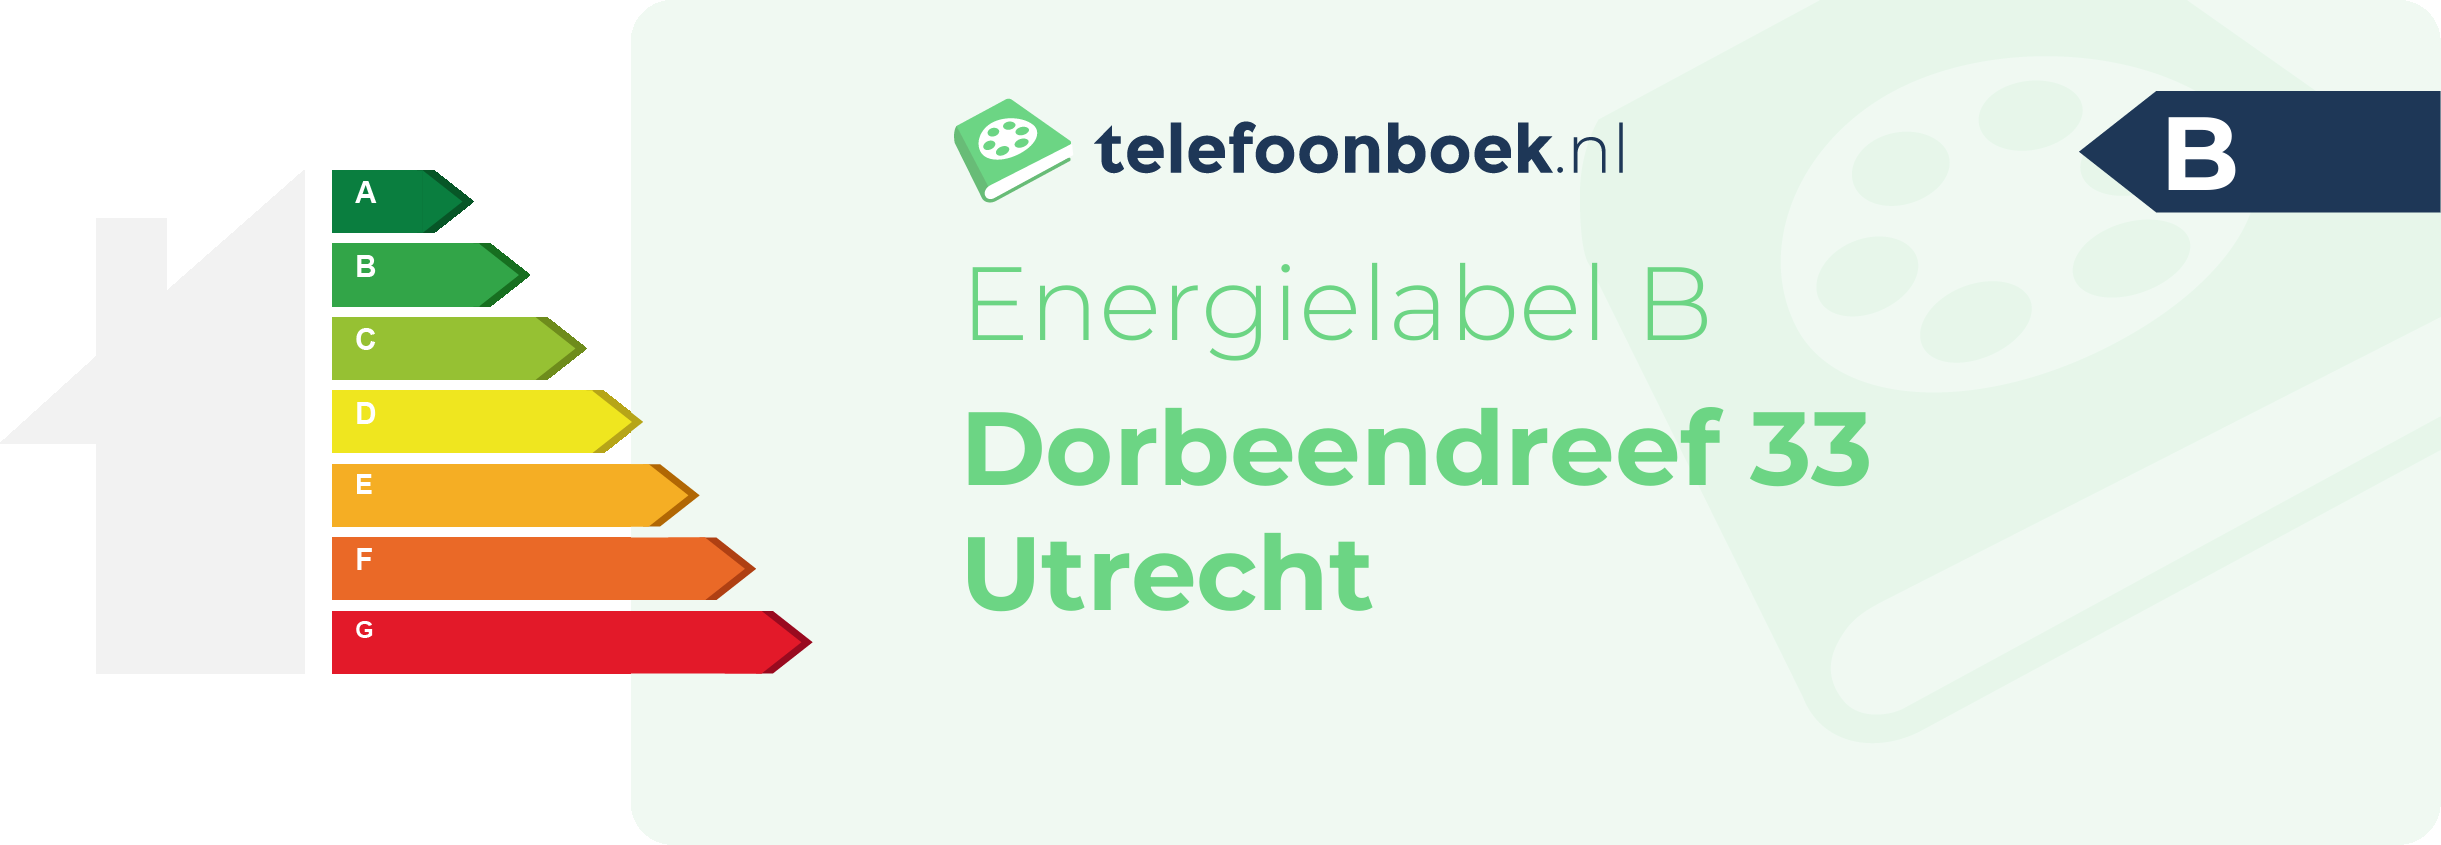 Energielabel Dorbeendreef 33 Utrecht